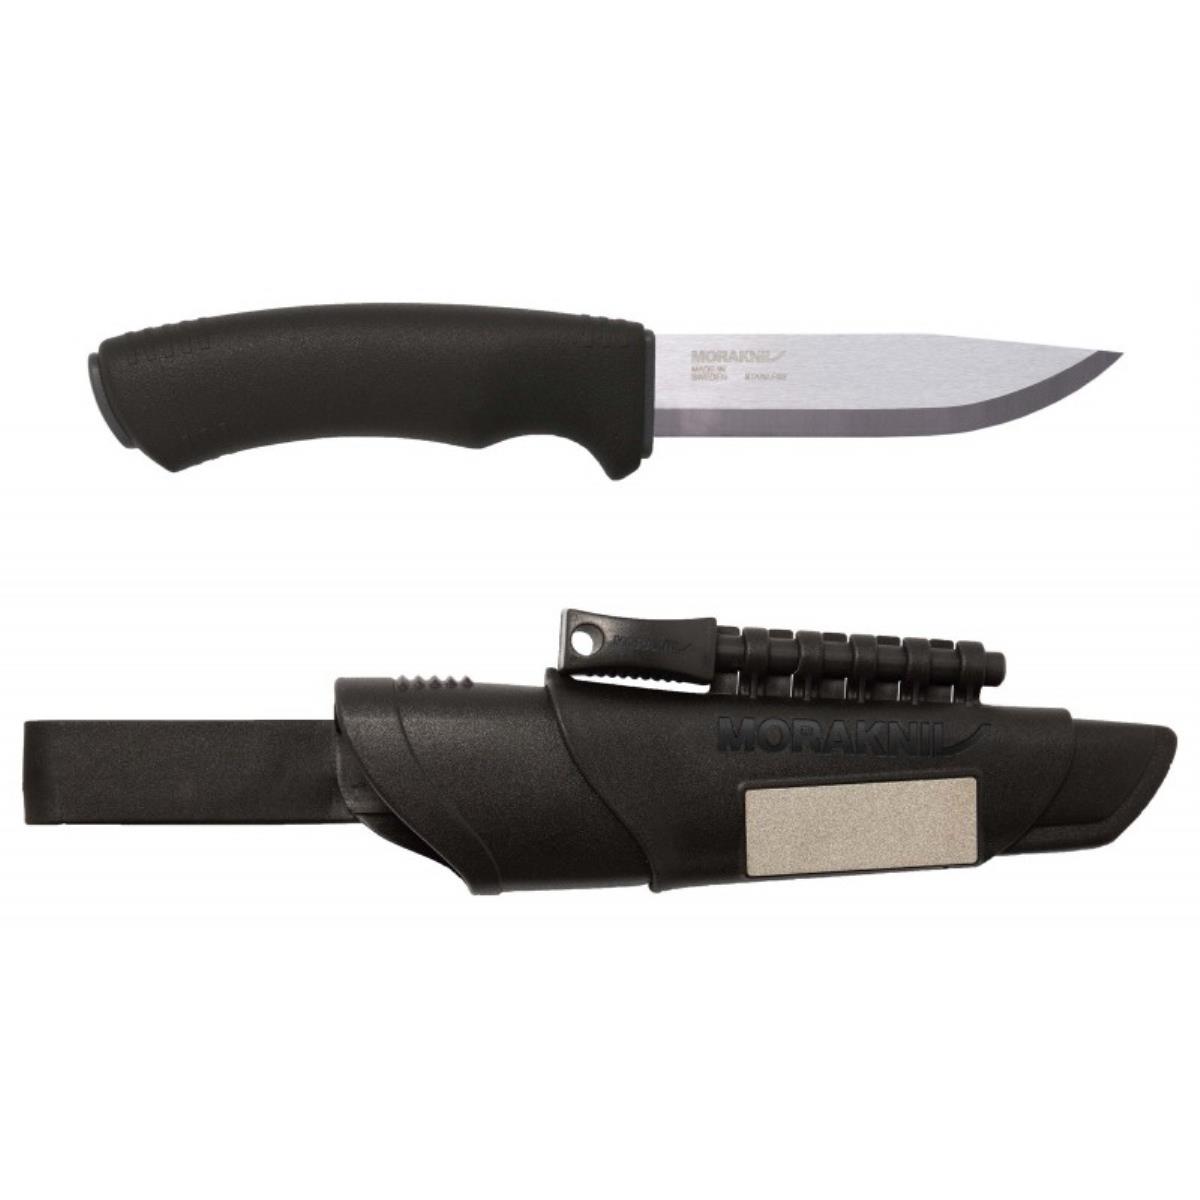 Нож Bushcraft Survival Black Ultimate Knife (11835) Morakniv нож kansbol burnt orange 13505 morakniv